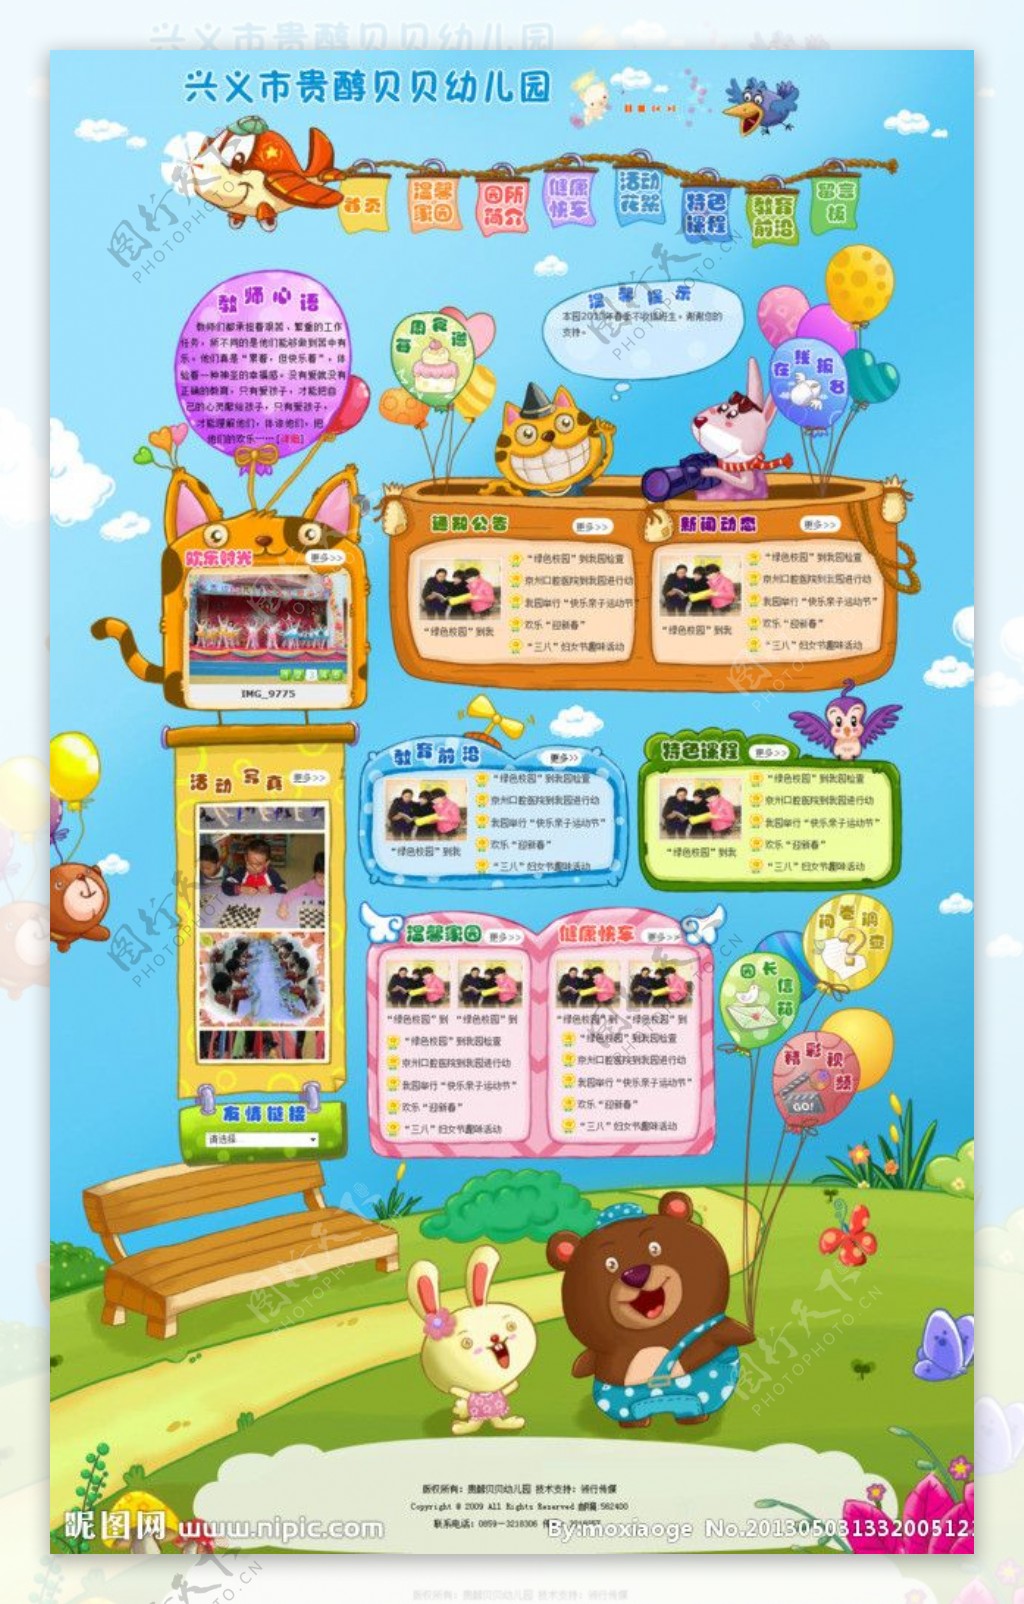 贵醇贝贝幼儿园网站模图片